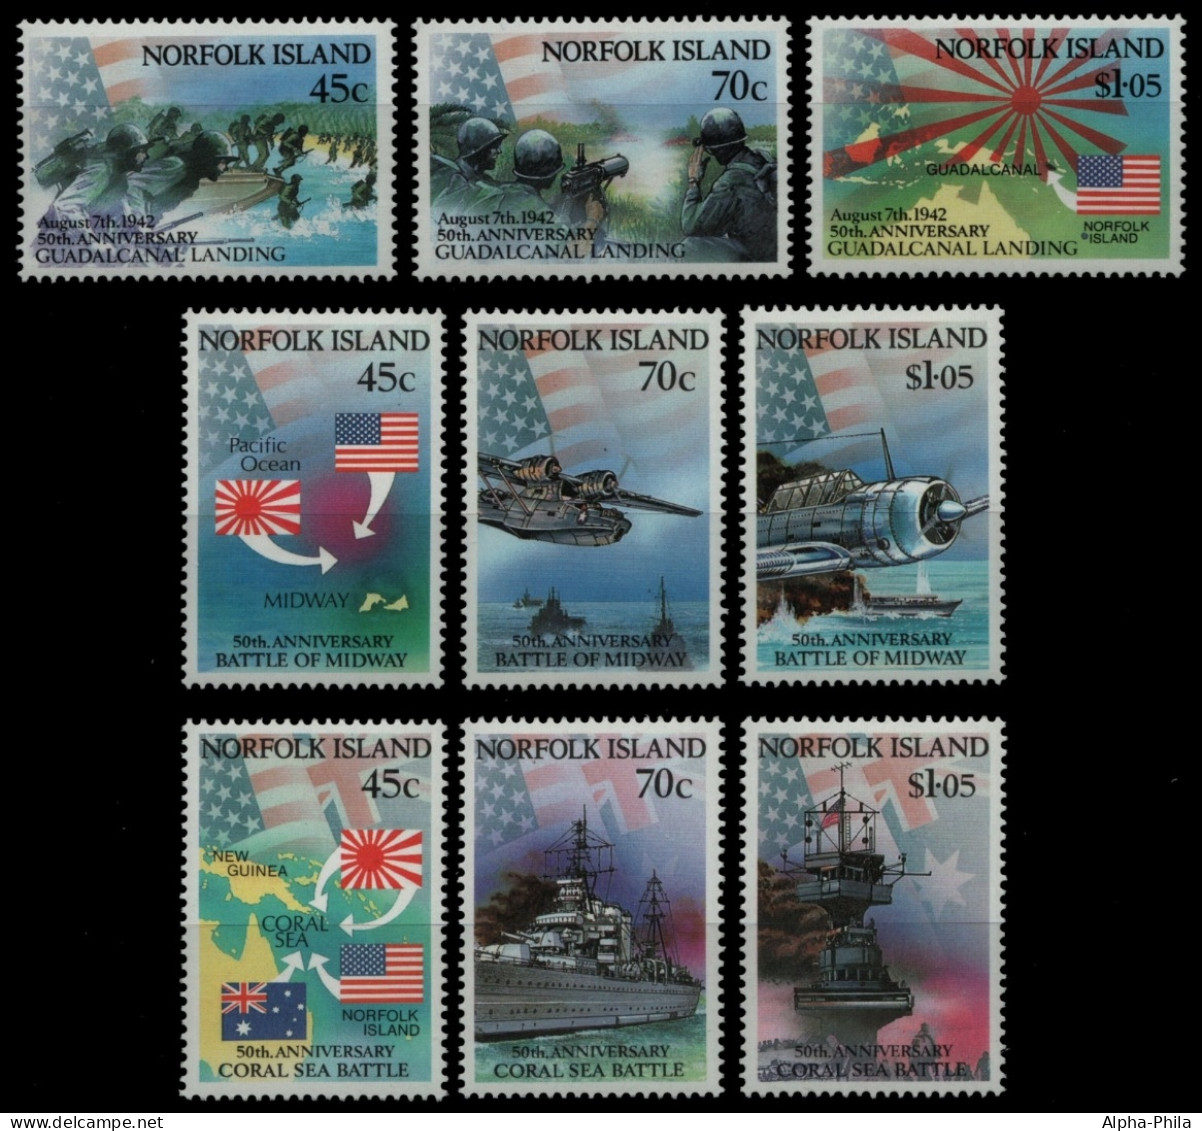 Norfolk-Insel 1992 - Mi-Nr. 522-524, 525-527 & 528-530 ** - MNH - 3 Ausgaben - Norfolk Island